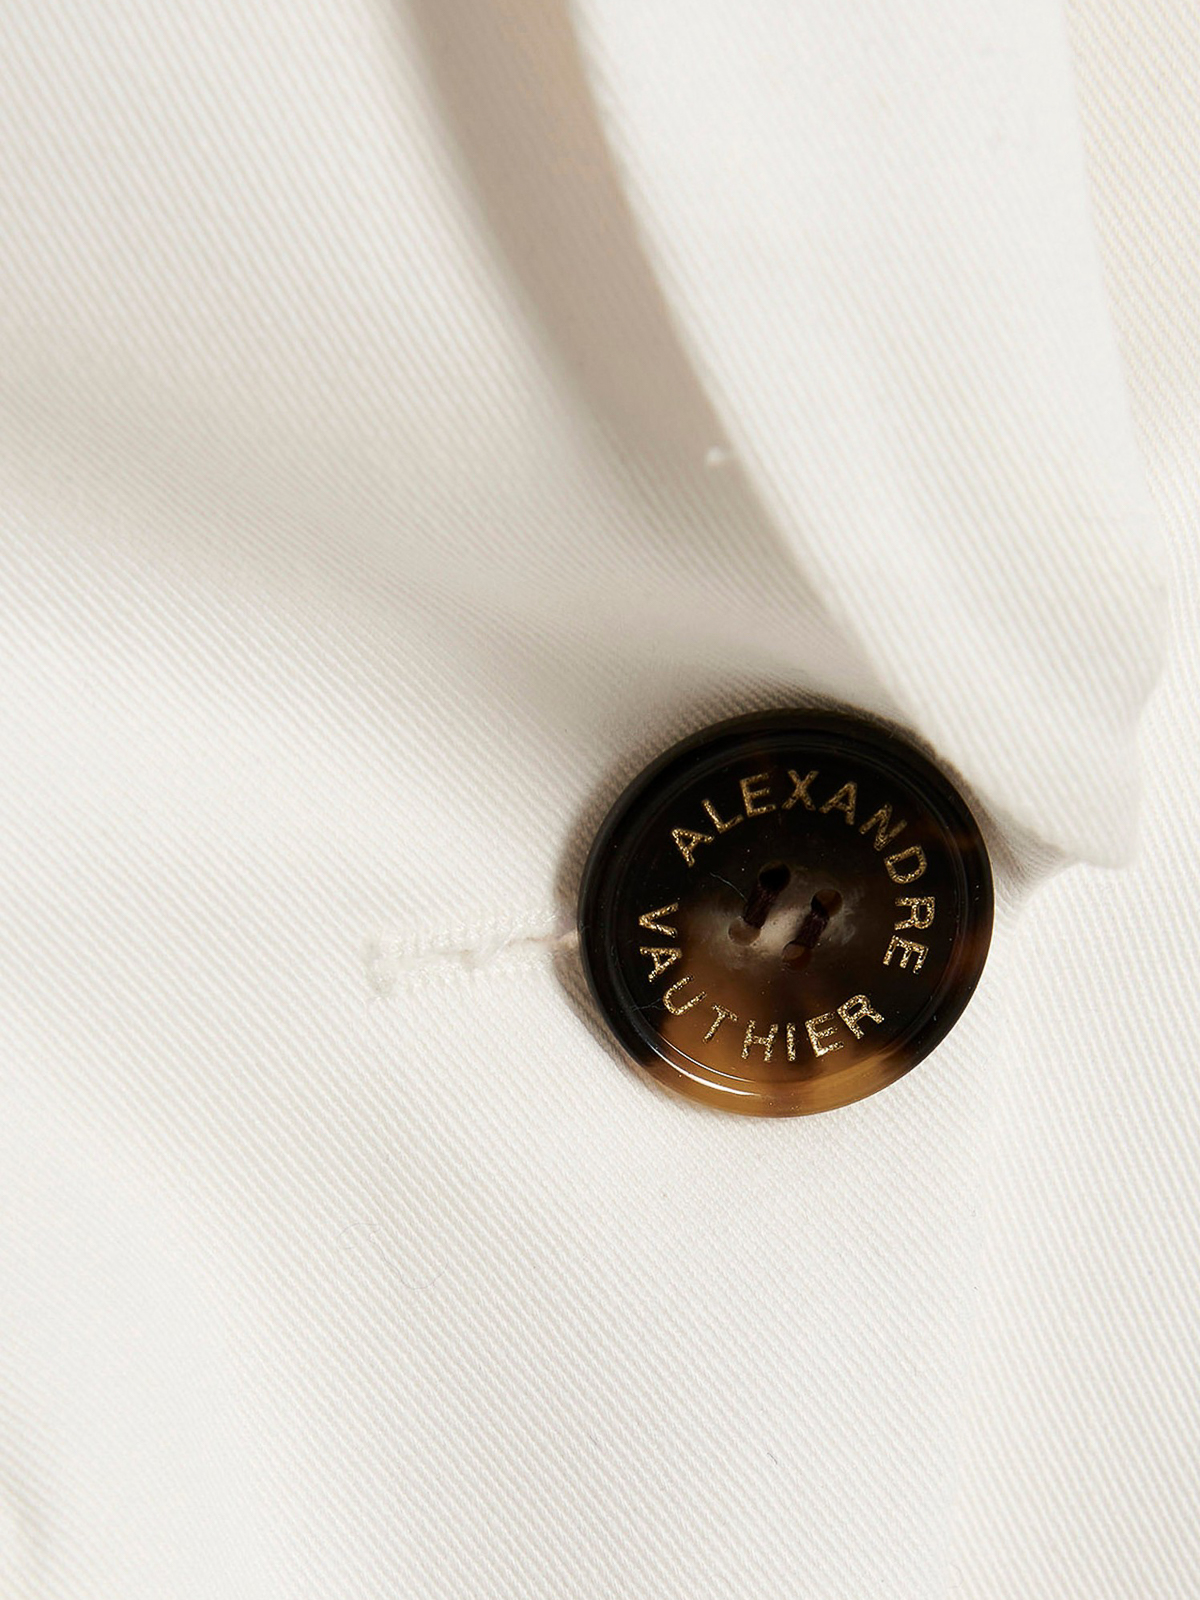 Shop Alexandre Vauthier Padded Shoulder Vest In White